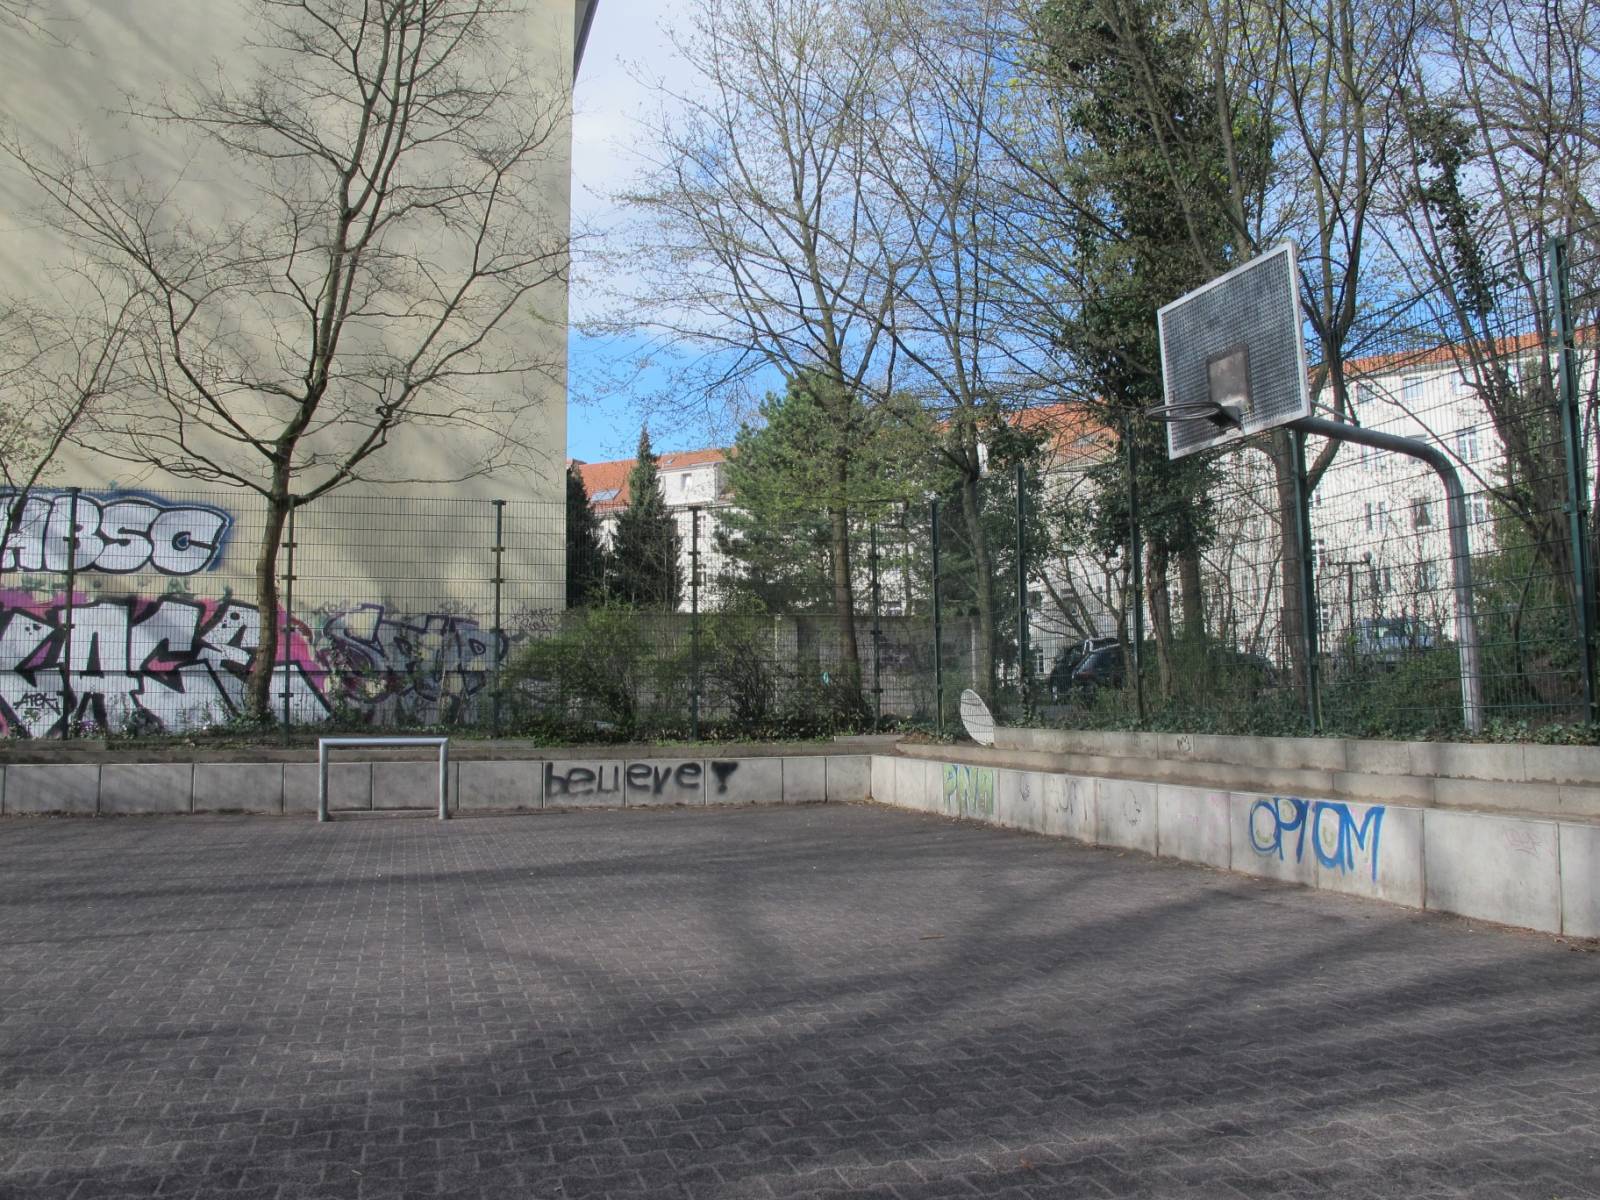 Spielplatz Am Bäkequell in Berlin